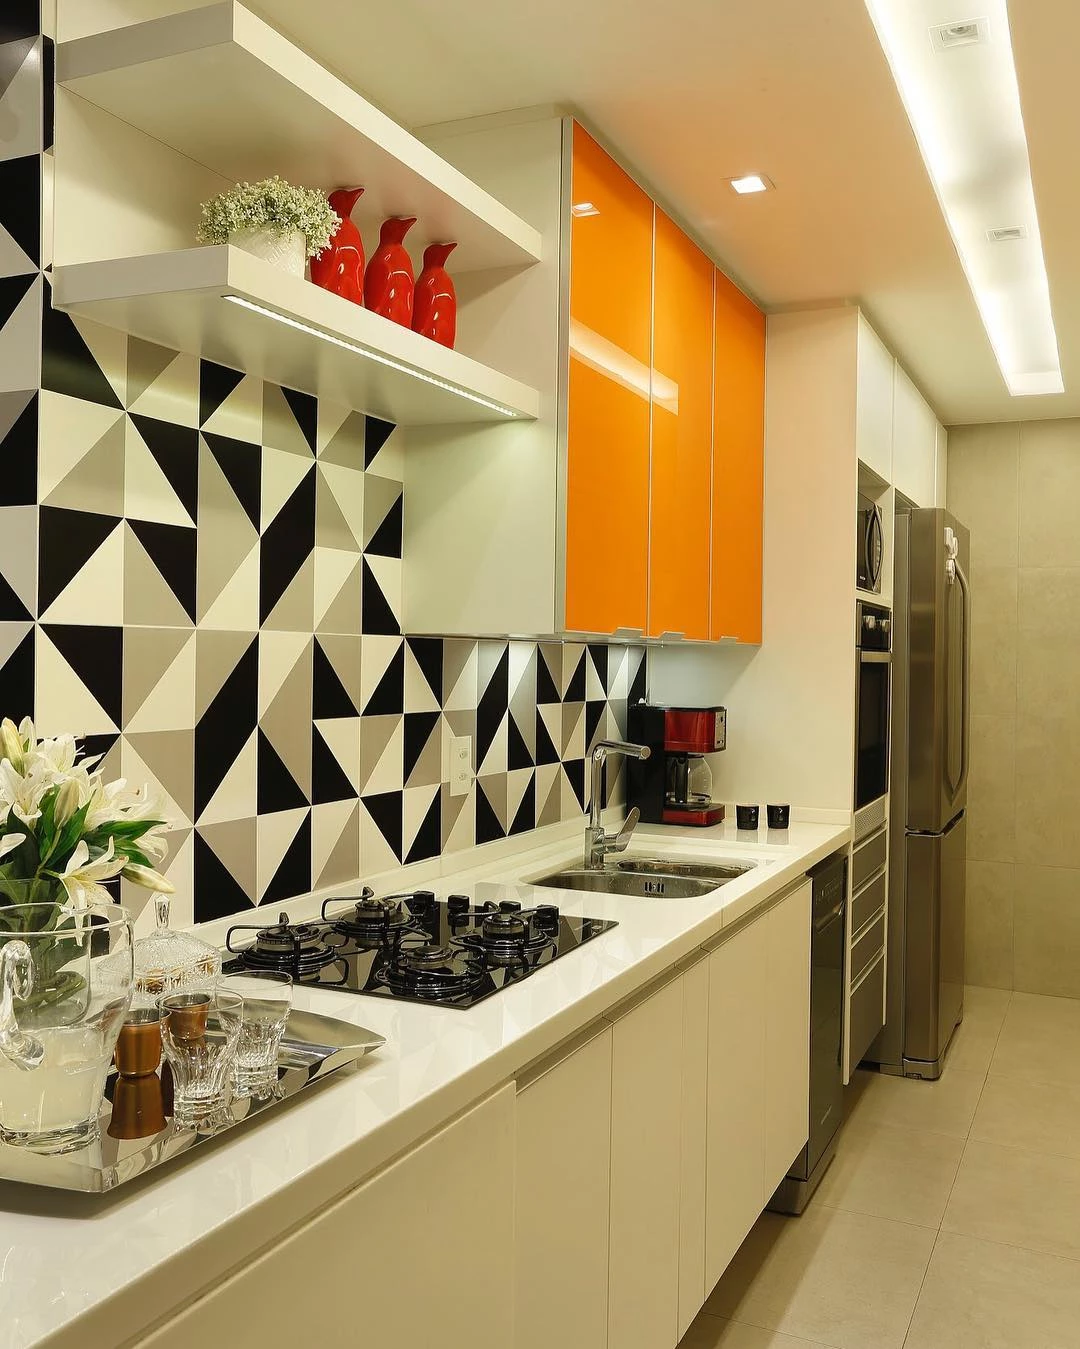 Azulejos para parede de cozinha decorada